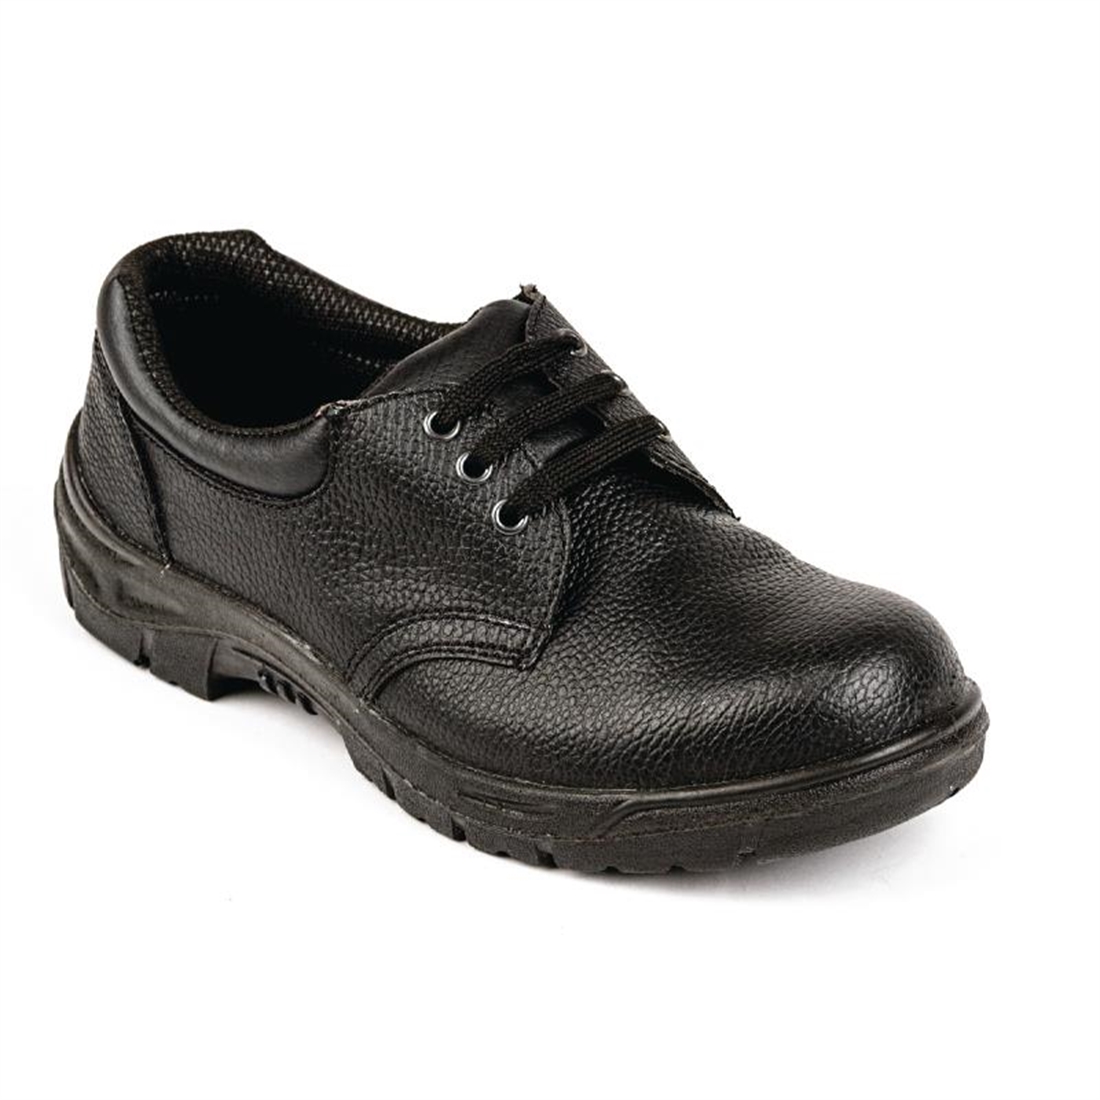 Slipbuster Unisex Safety Shoe Black 39